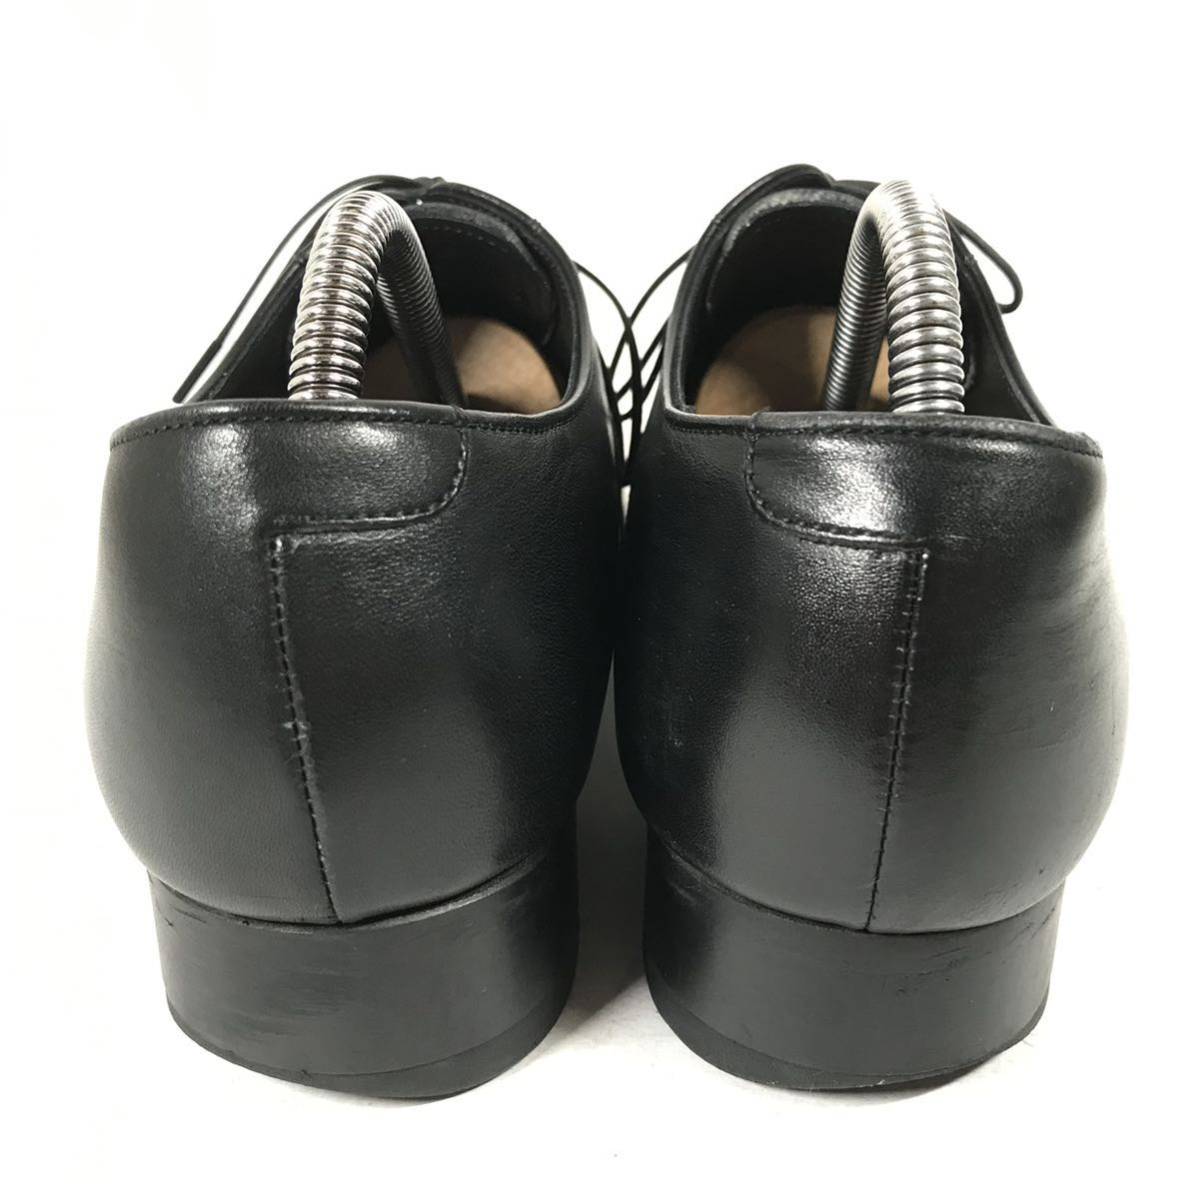 【リーガル】本物 REGAL 靴 25cm 黒 ストレートチップ ビジネスシューズ 内羽根式 本革 レザー 男性用 メンズ 日本製 25 b_画像3